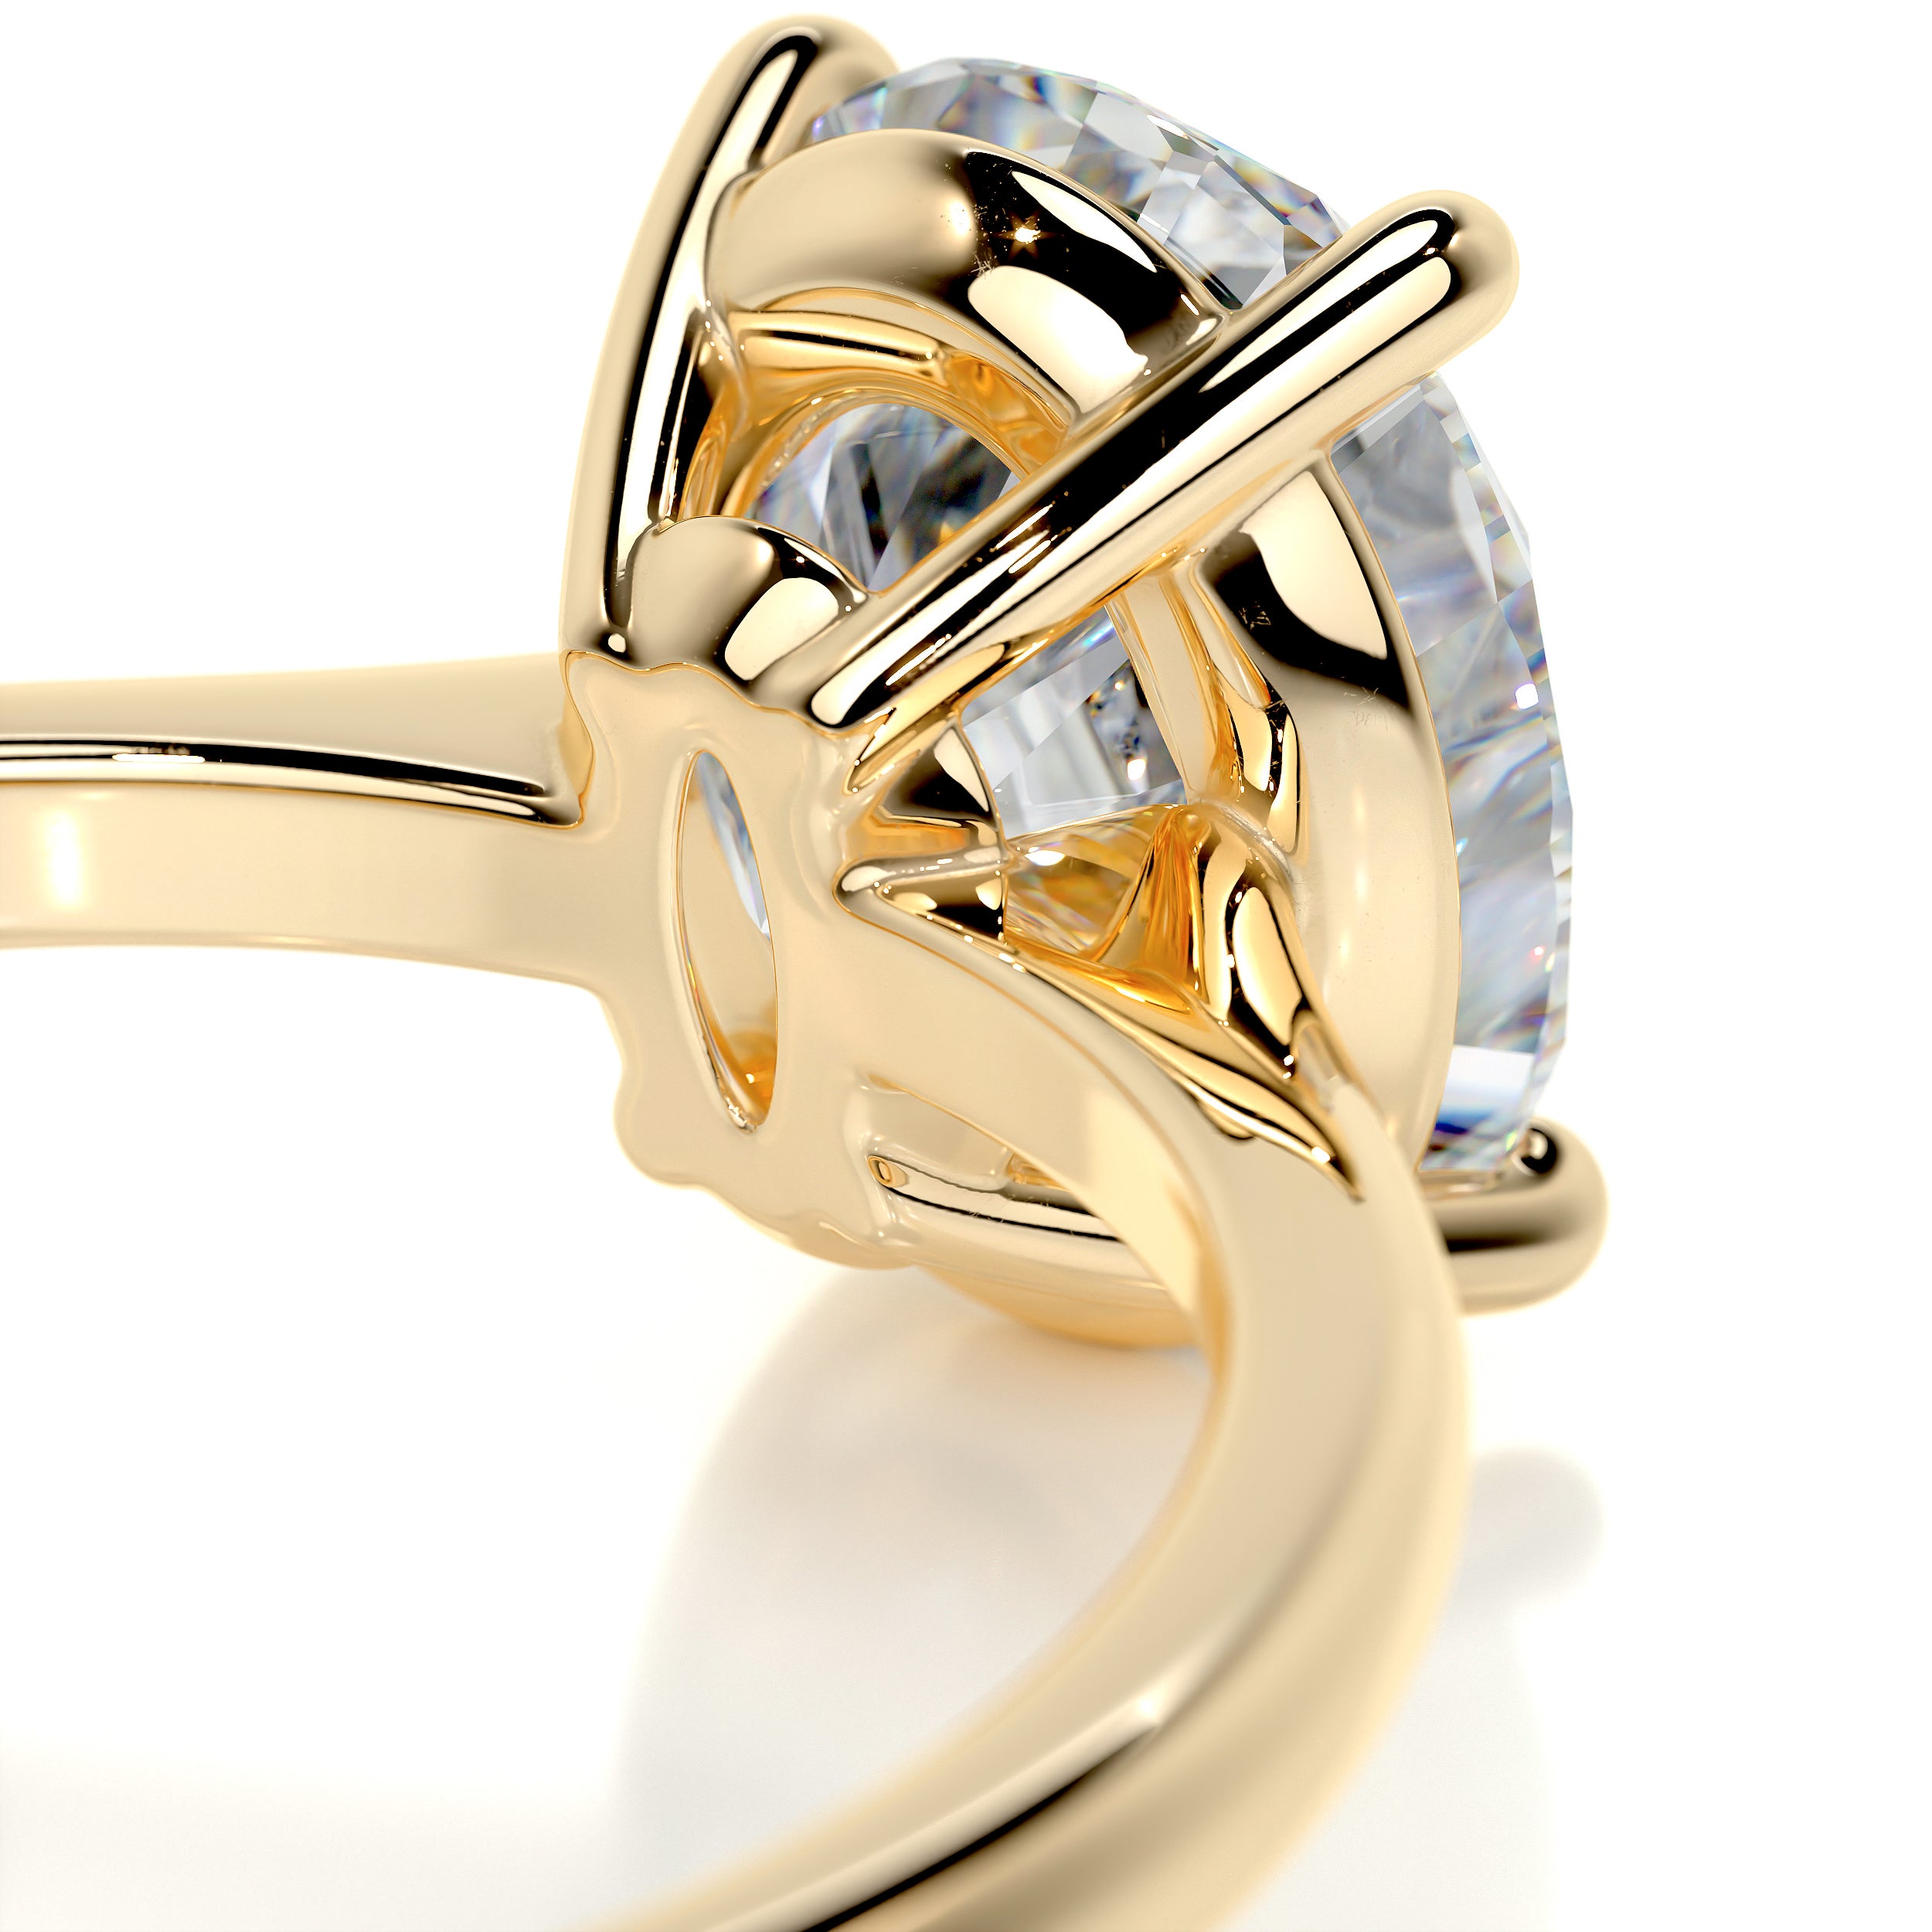 Julia Moissanite Ring   (1.5 Carat) -18K Yellow Gold